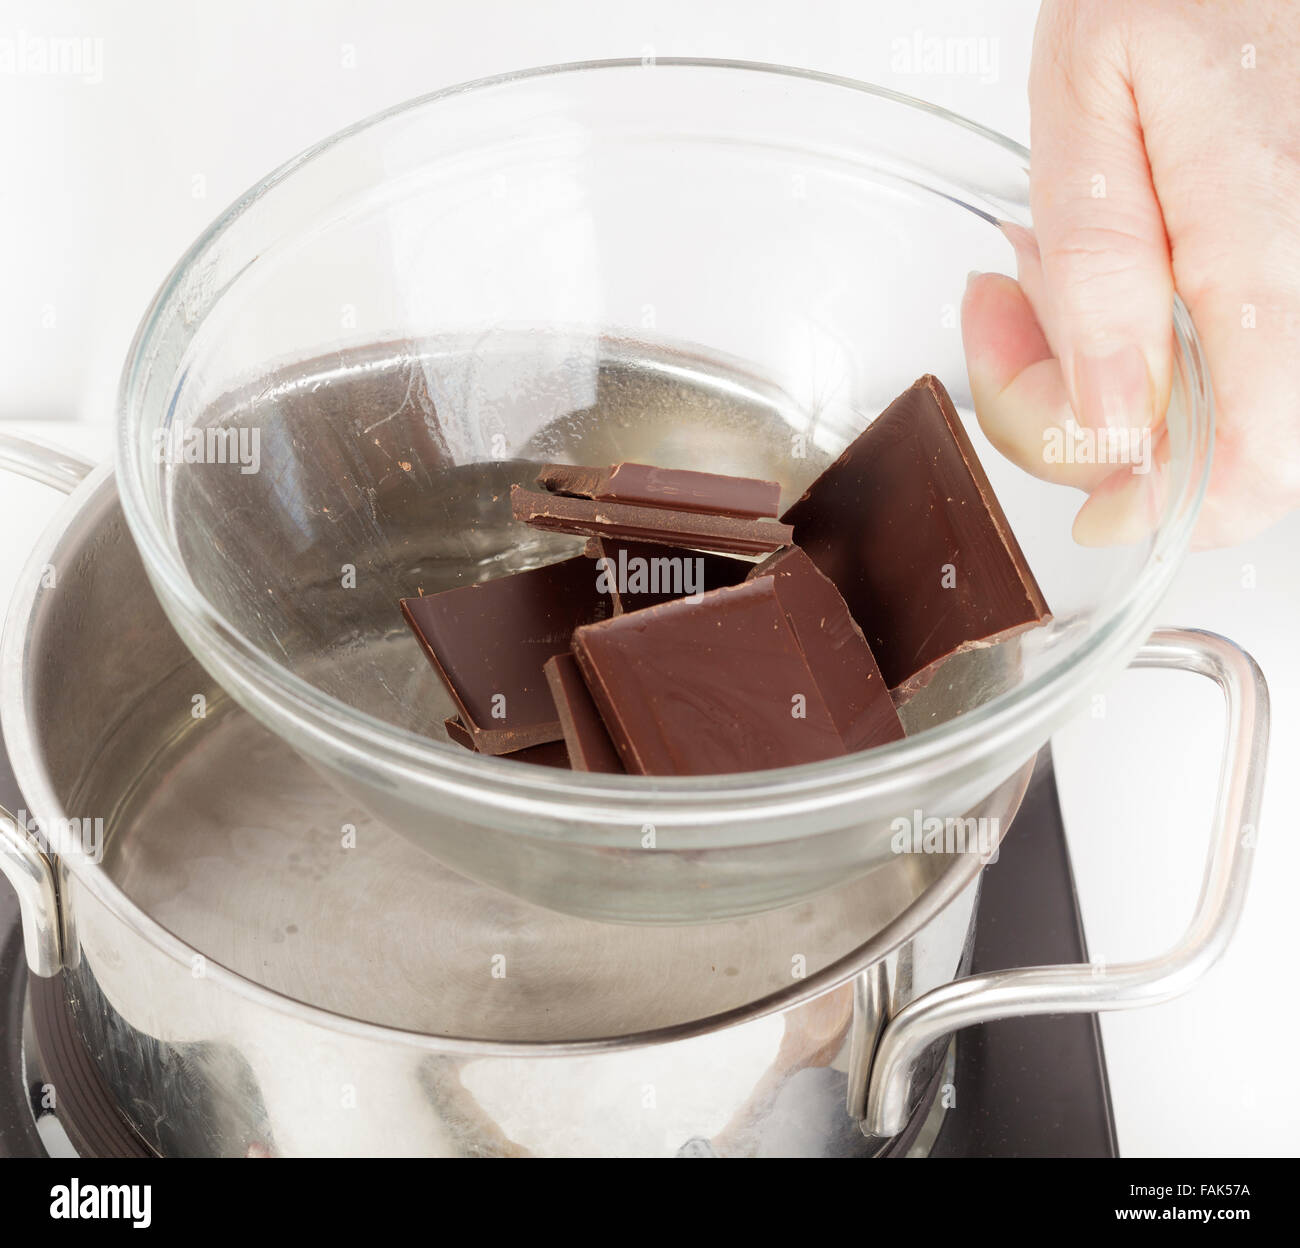 Mettere una ciotola di cioccolato sul fondo della padella di acqua per sciogliere a bagnomaria Foto Stock